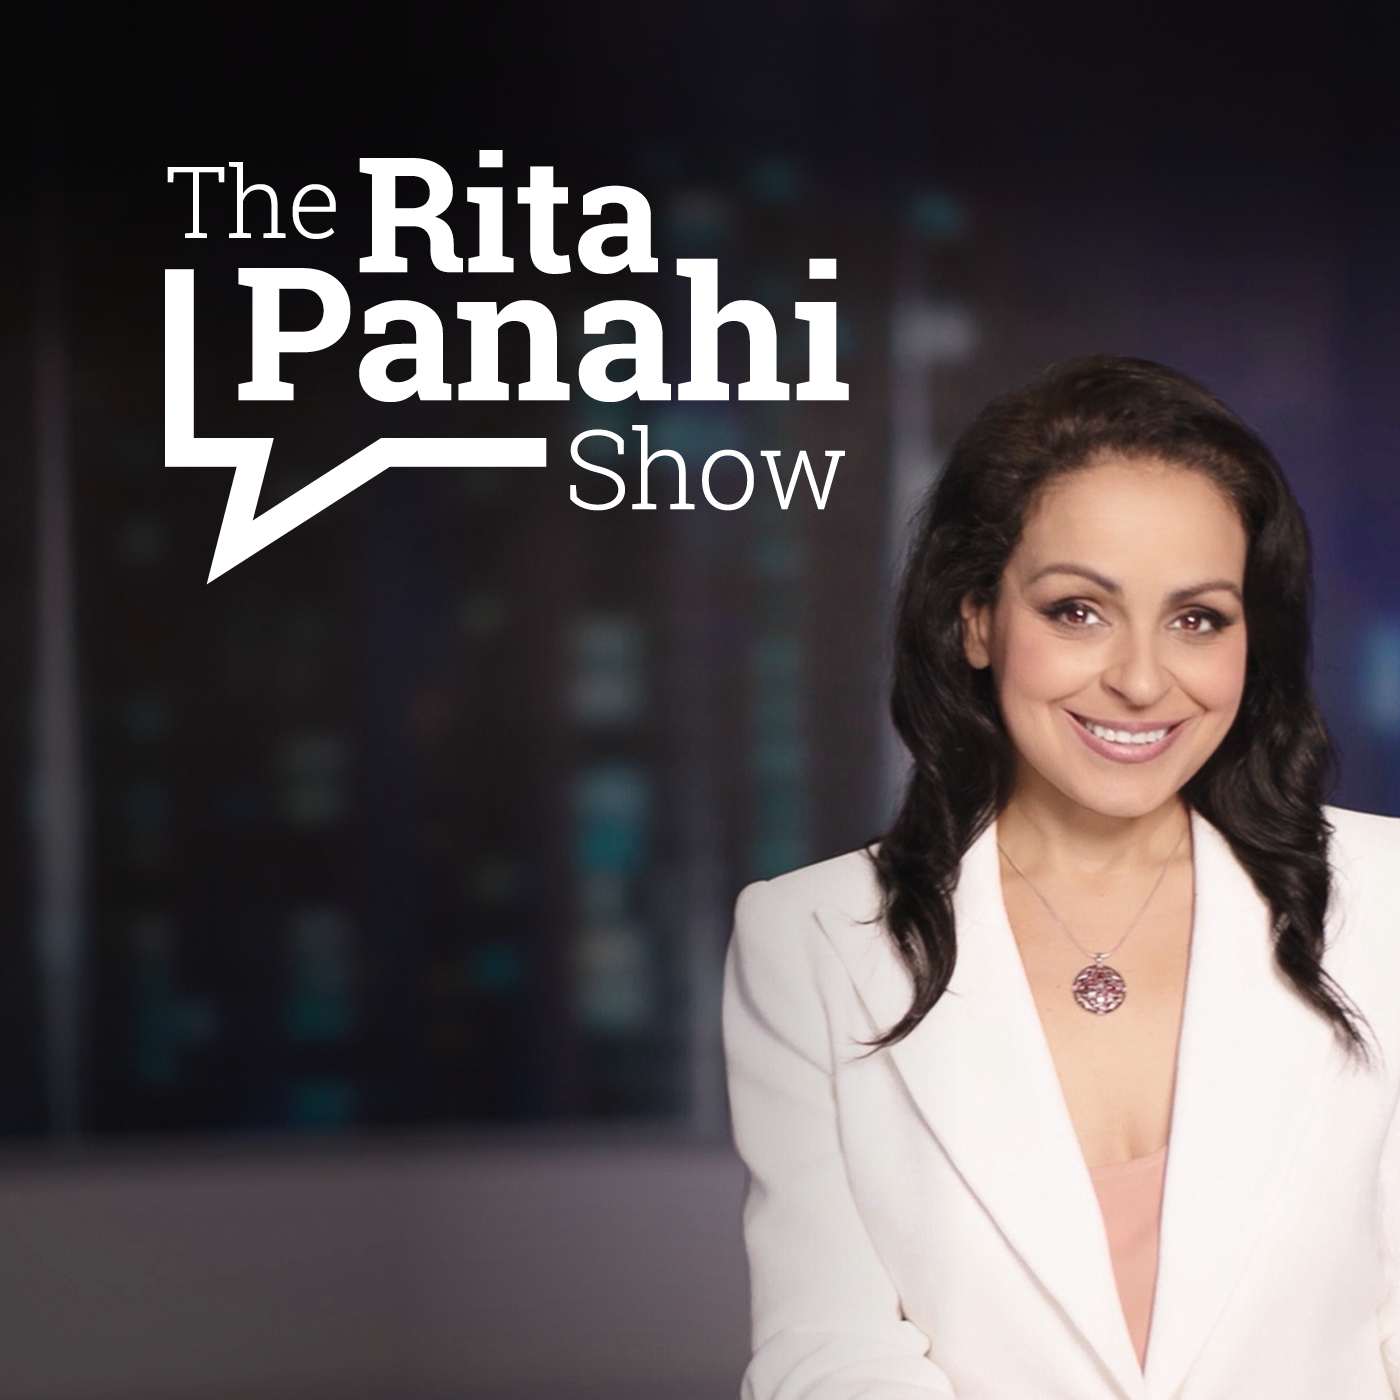 The Rita Panahi Show